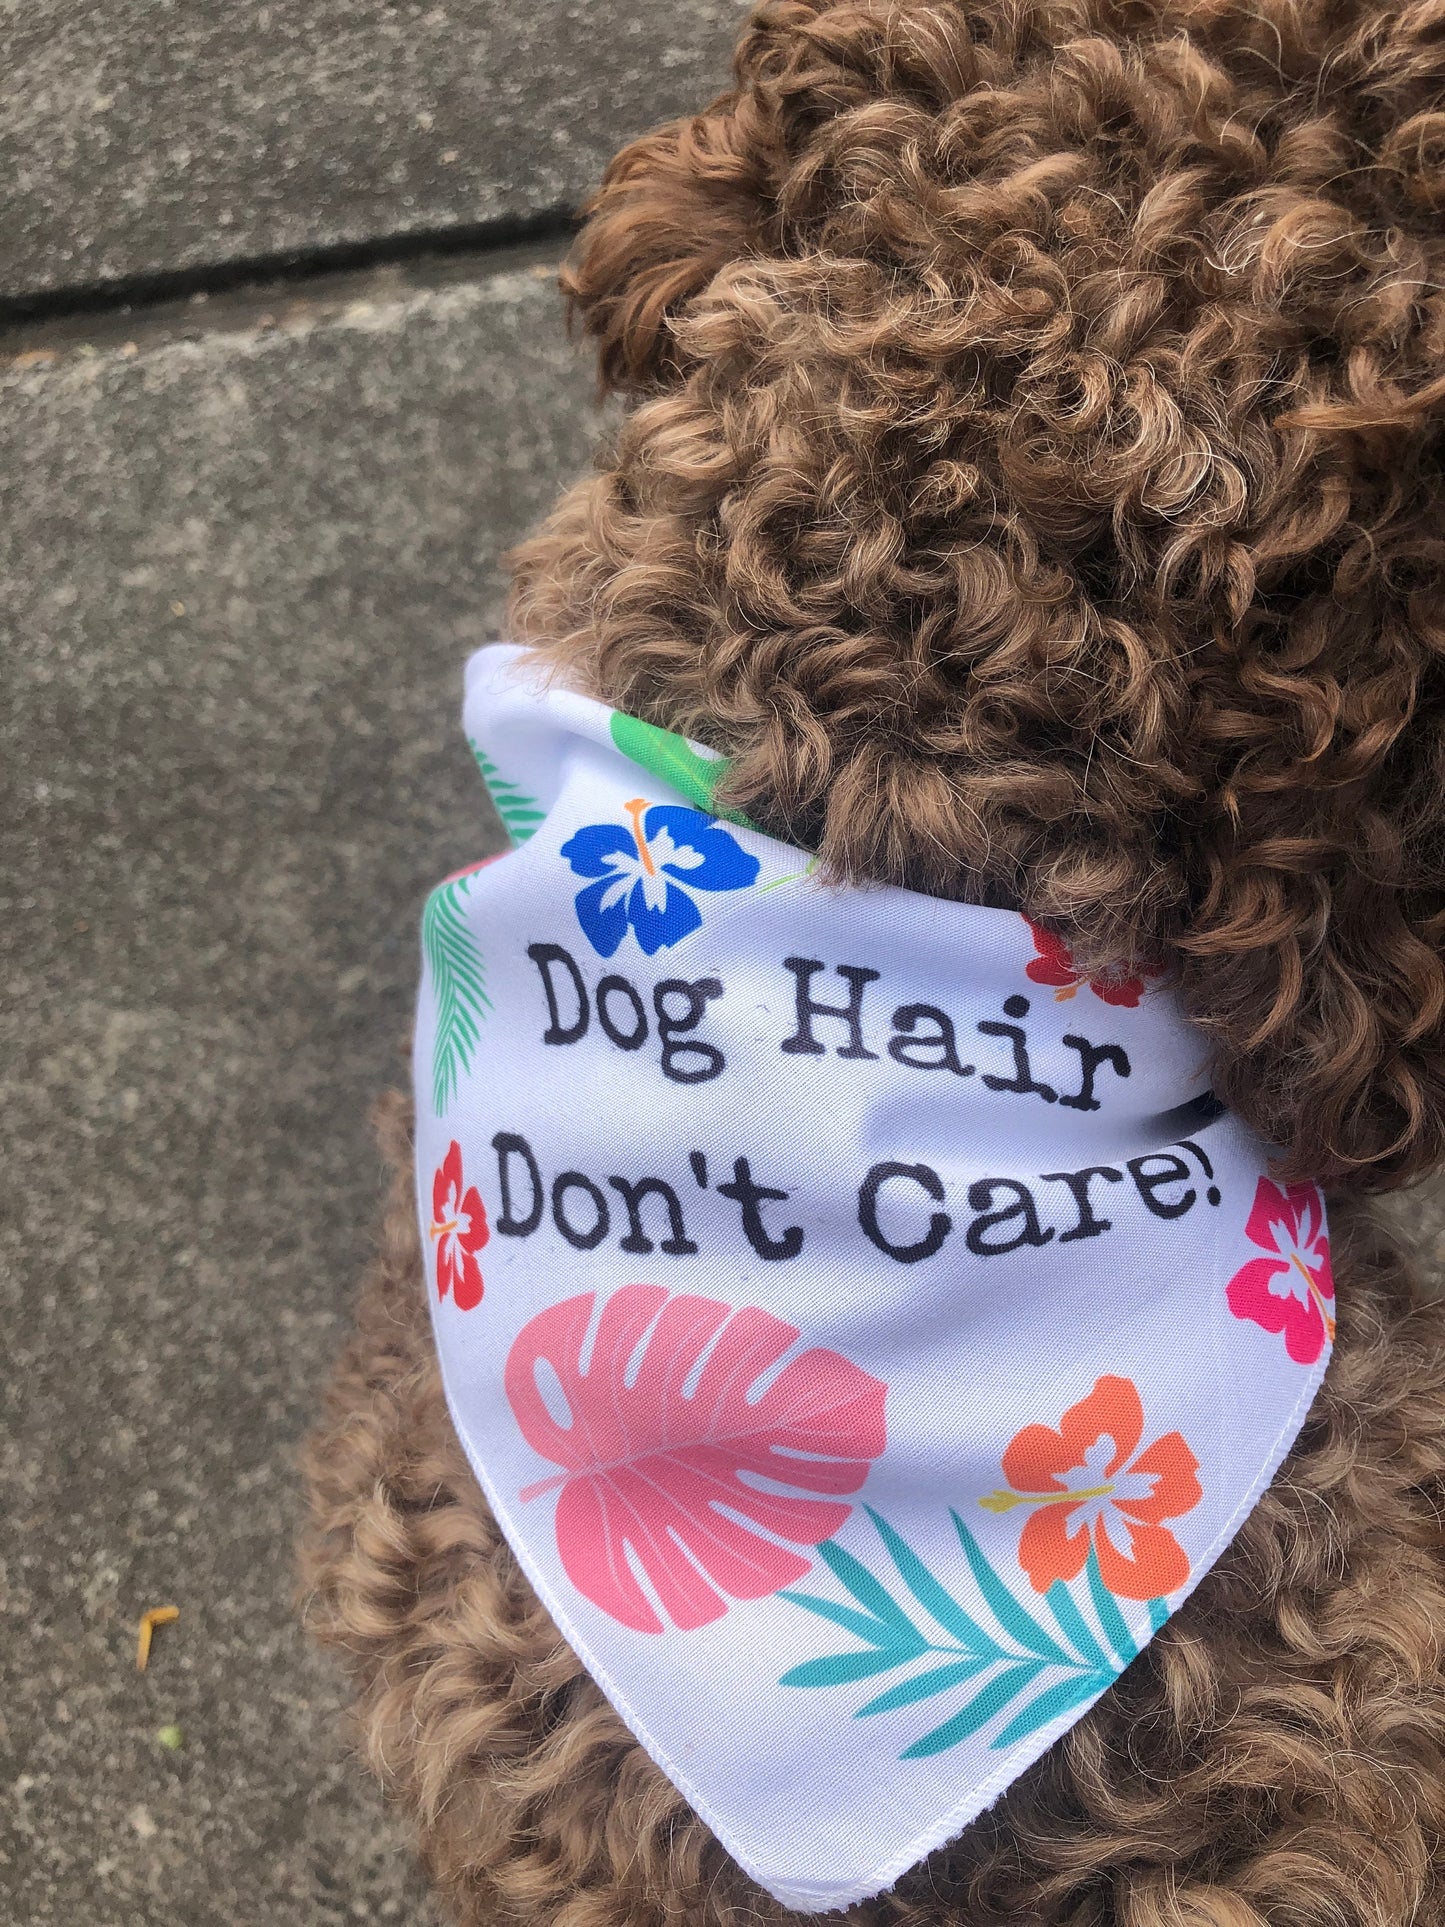 Dog Hair Don't care dog Bandana, Custom Dog bandana, Monstera dog bandana, custom dog gifts,  summer fun dog accessories, good dog gift